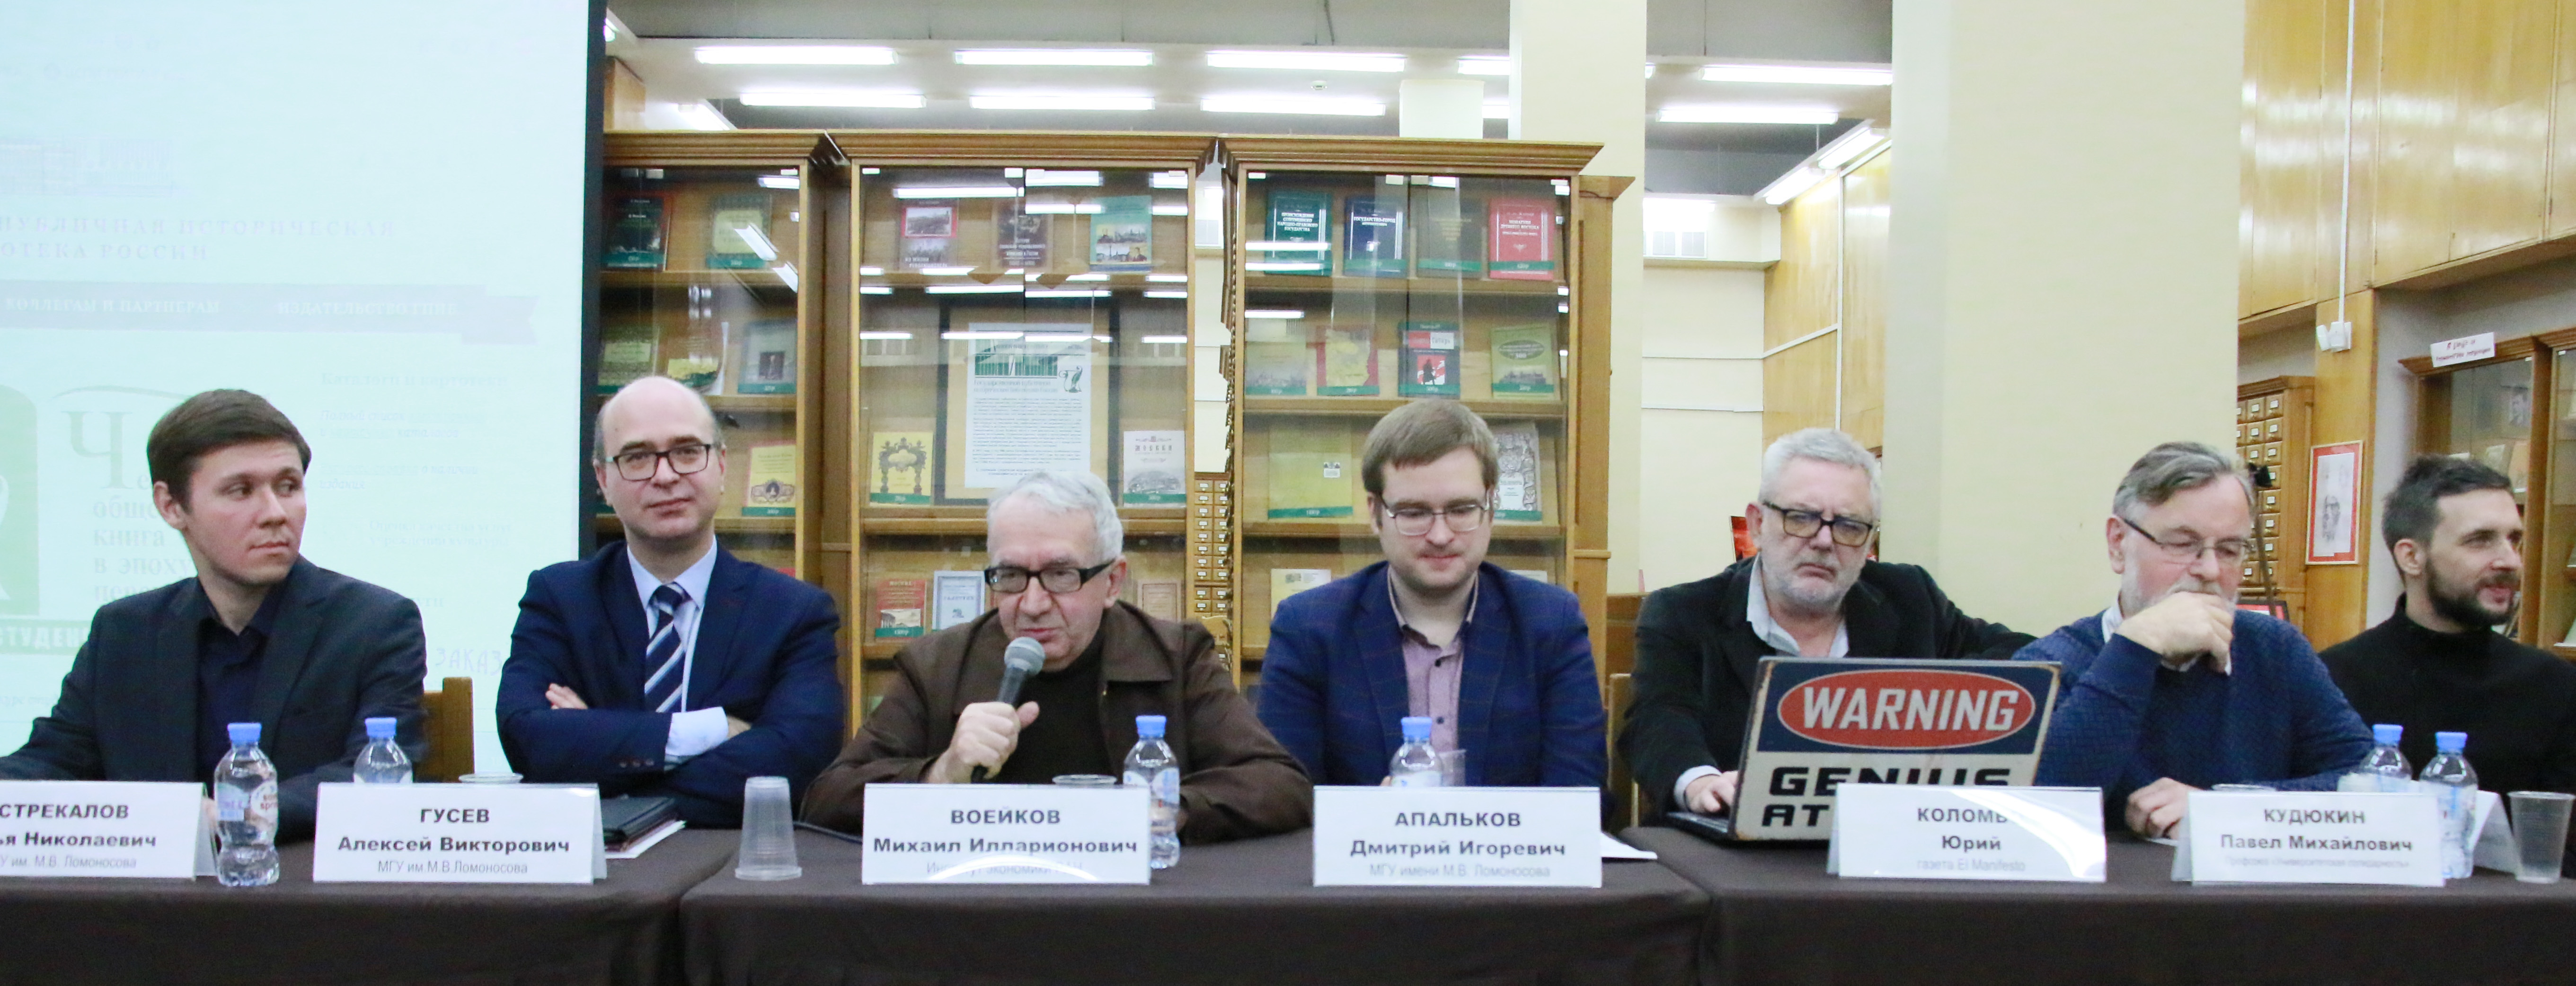 Участие в круглом столе "Лев Троцкий: личность и политическая деятельность"